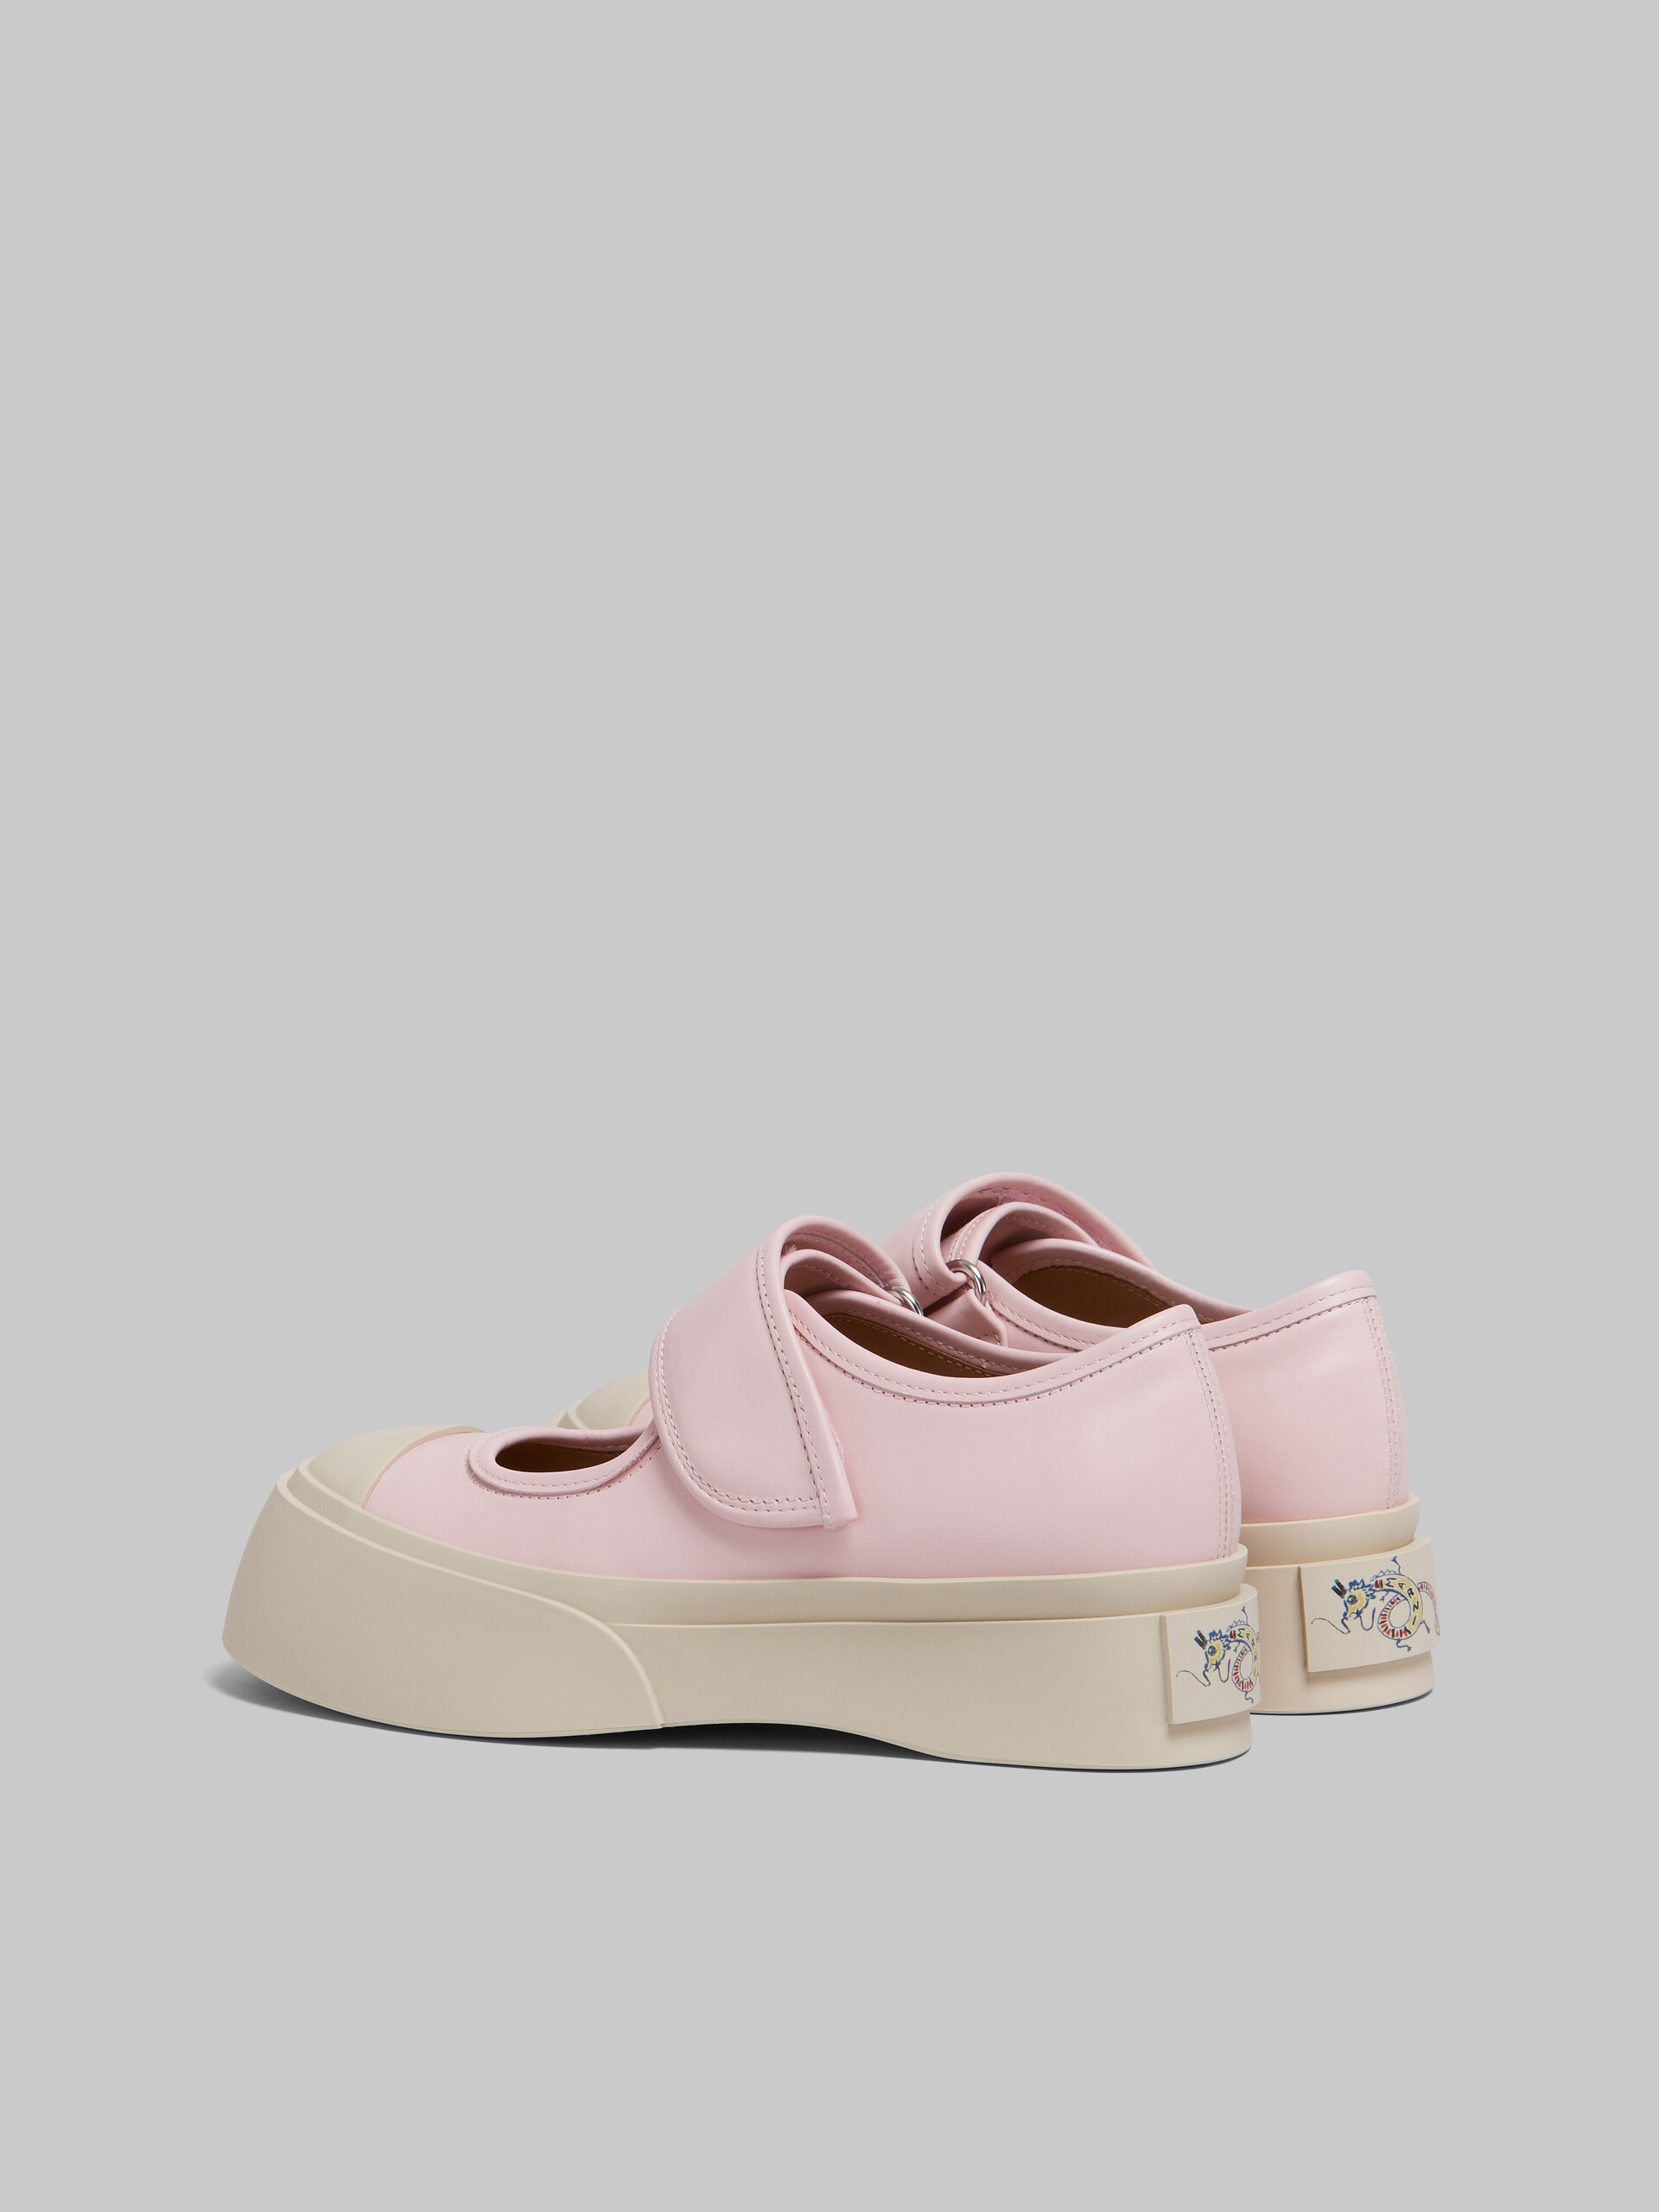 Zapatilla Mary Jane de piel de napa rosa claro - Sneakers - Image 3